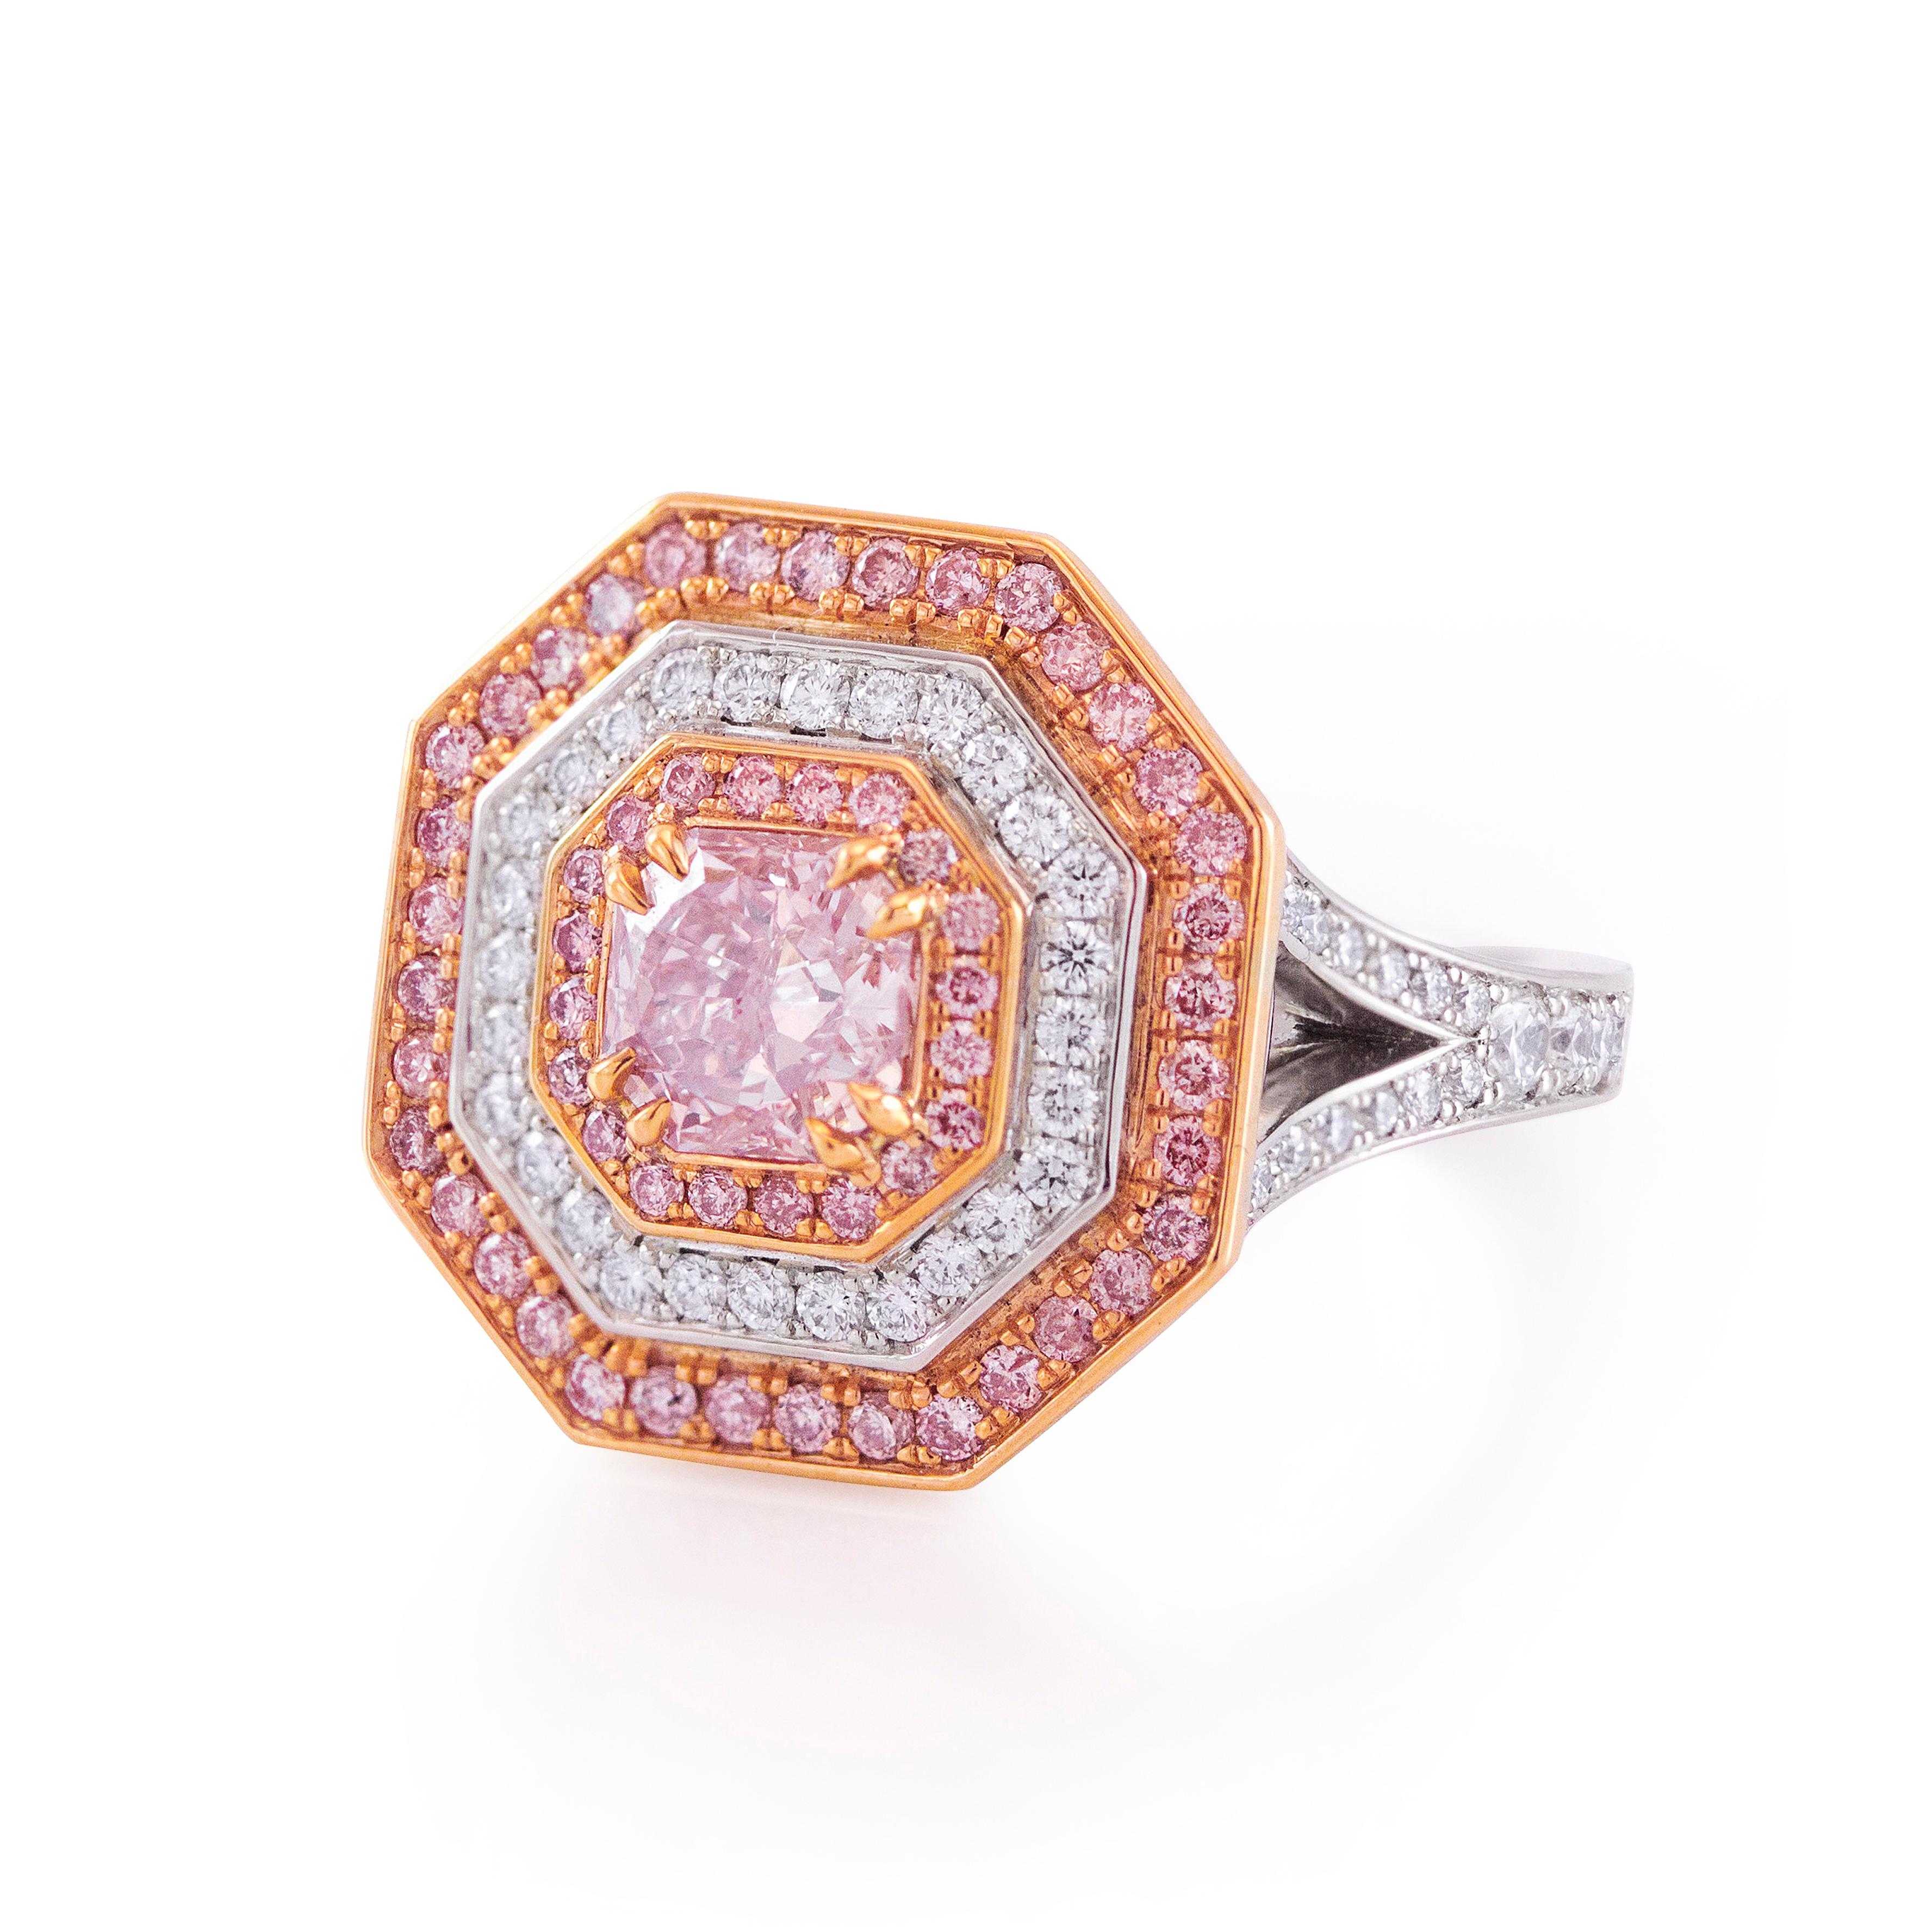 Diese elegante und atemberaubende Verlobungsring verfügt über einen 0,90 Karat strahlend geschliffenen Diamanten Mittelstein, dass GIA zertifiziert als Fancy Purplish Pink Farbe. Der Mittelstein ist mit 2 Reihen rosafarbener Diamanten im Rundschliff